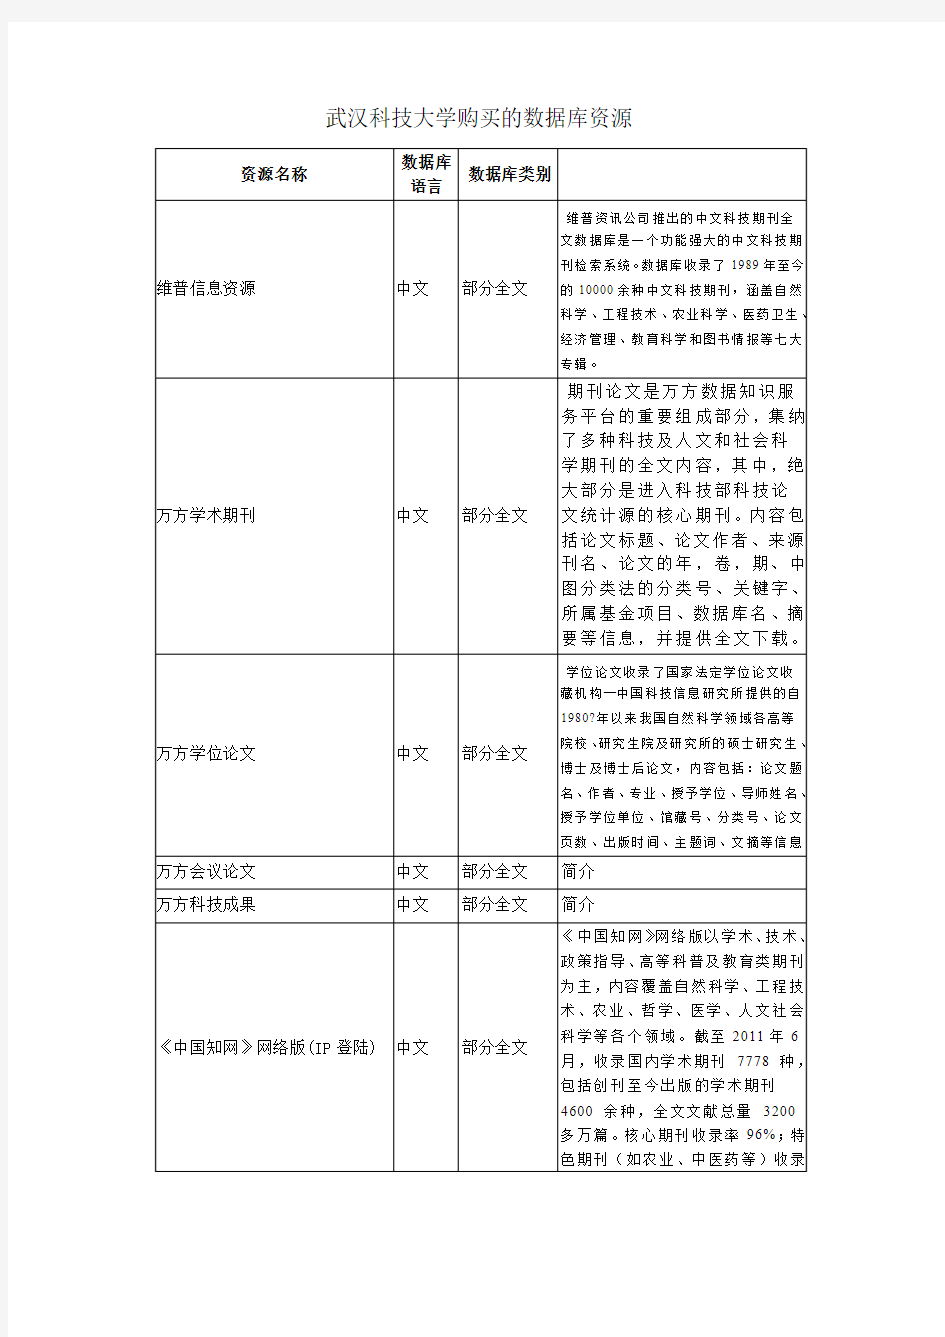 武汉科技大学图书馆购买的数据库